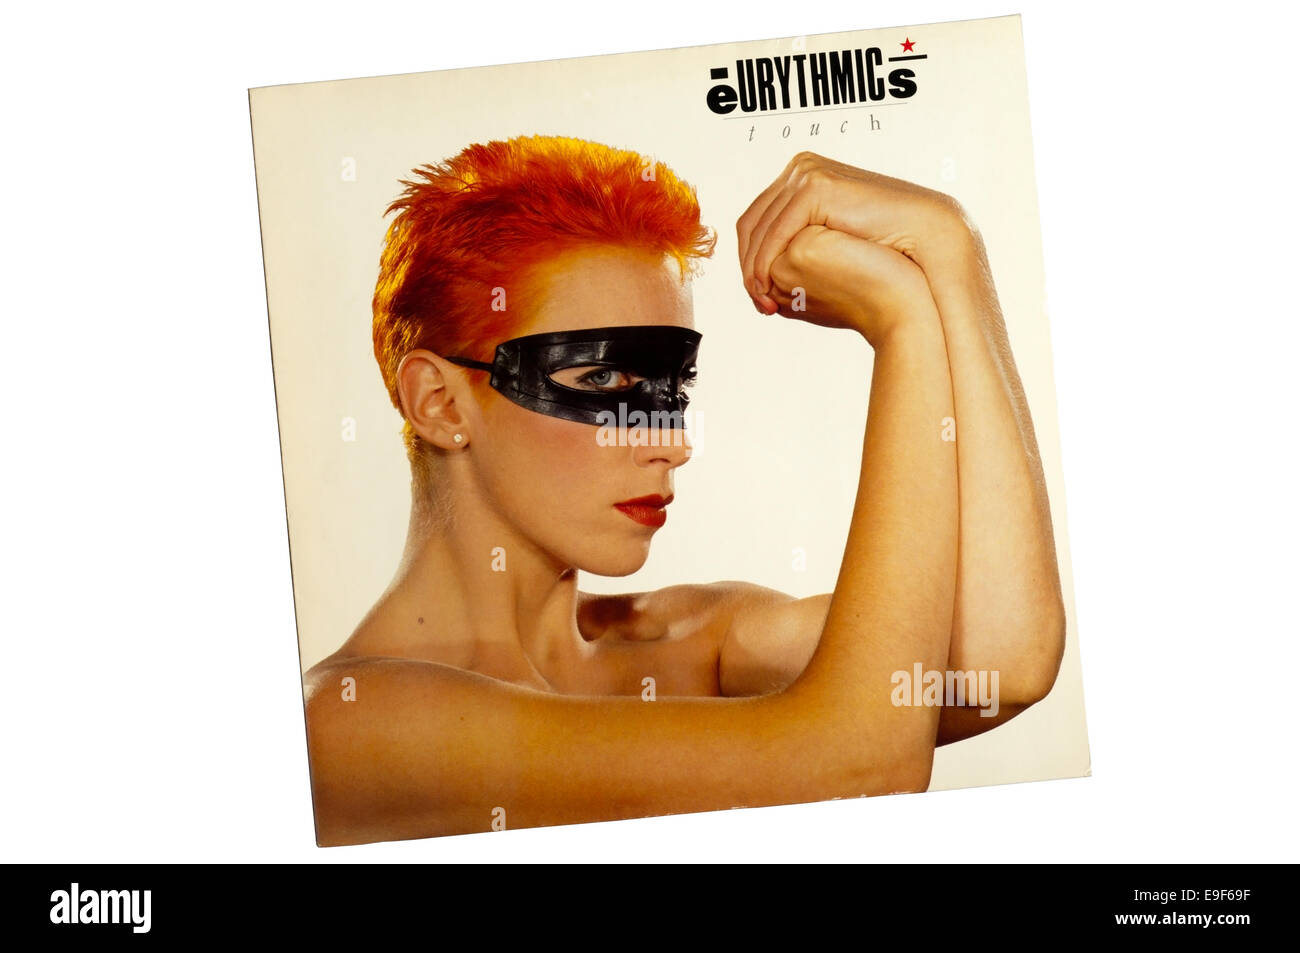 Touch wurde das 3. Studioalbum der britischen New-Wave-Duos Eurythmics, 1983 veröffentlicht. Stockfoto